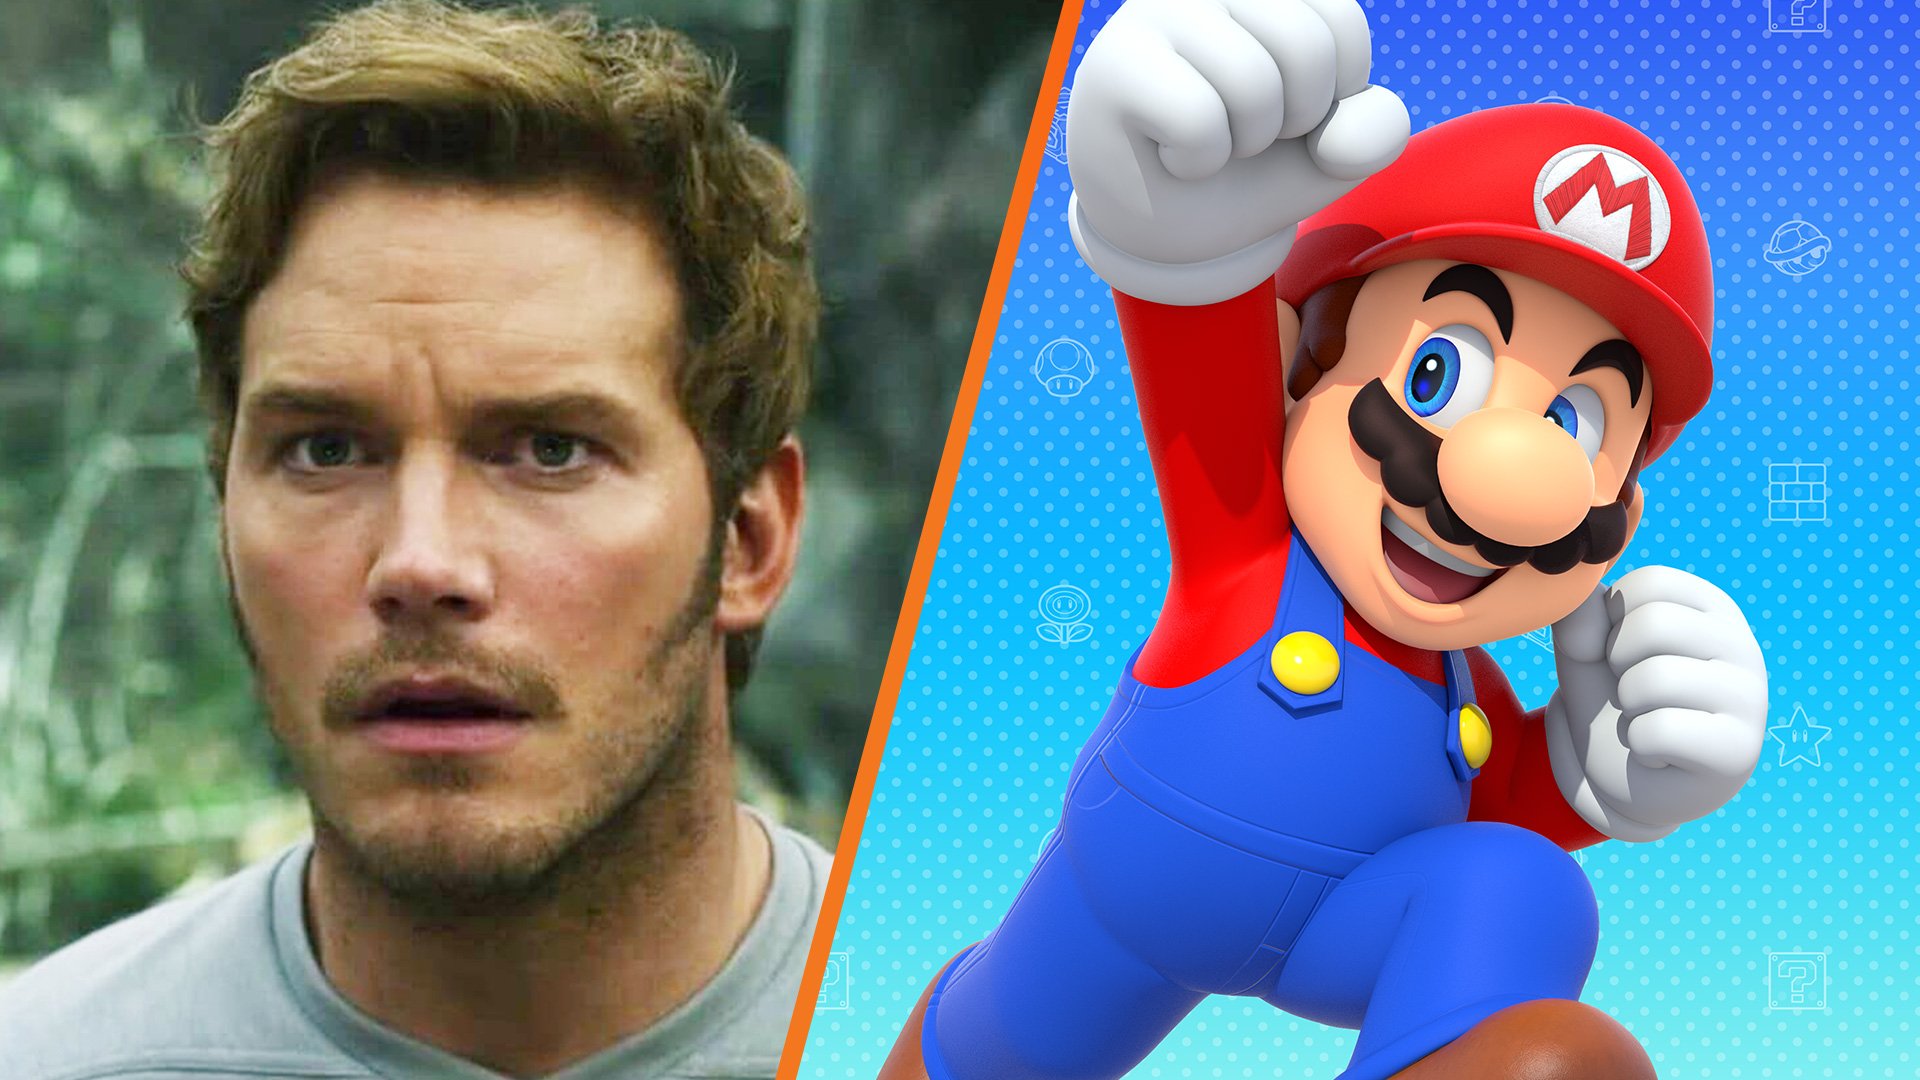 The Super Mario animated movie's initial cast includes Chris Pratt as Mario  | VGC